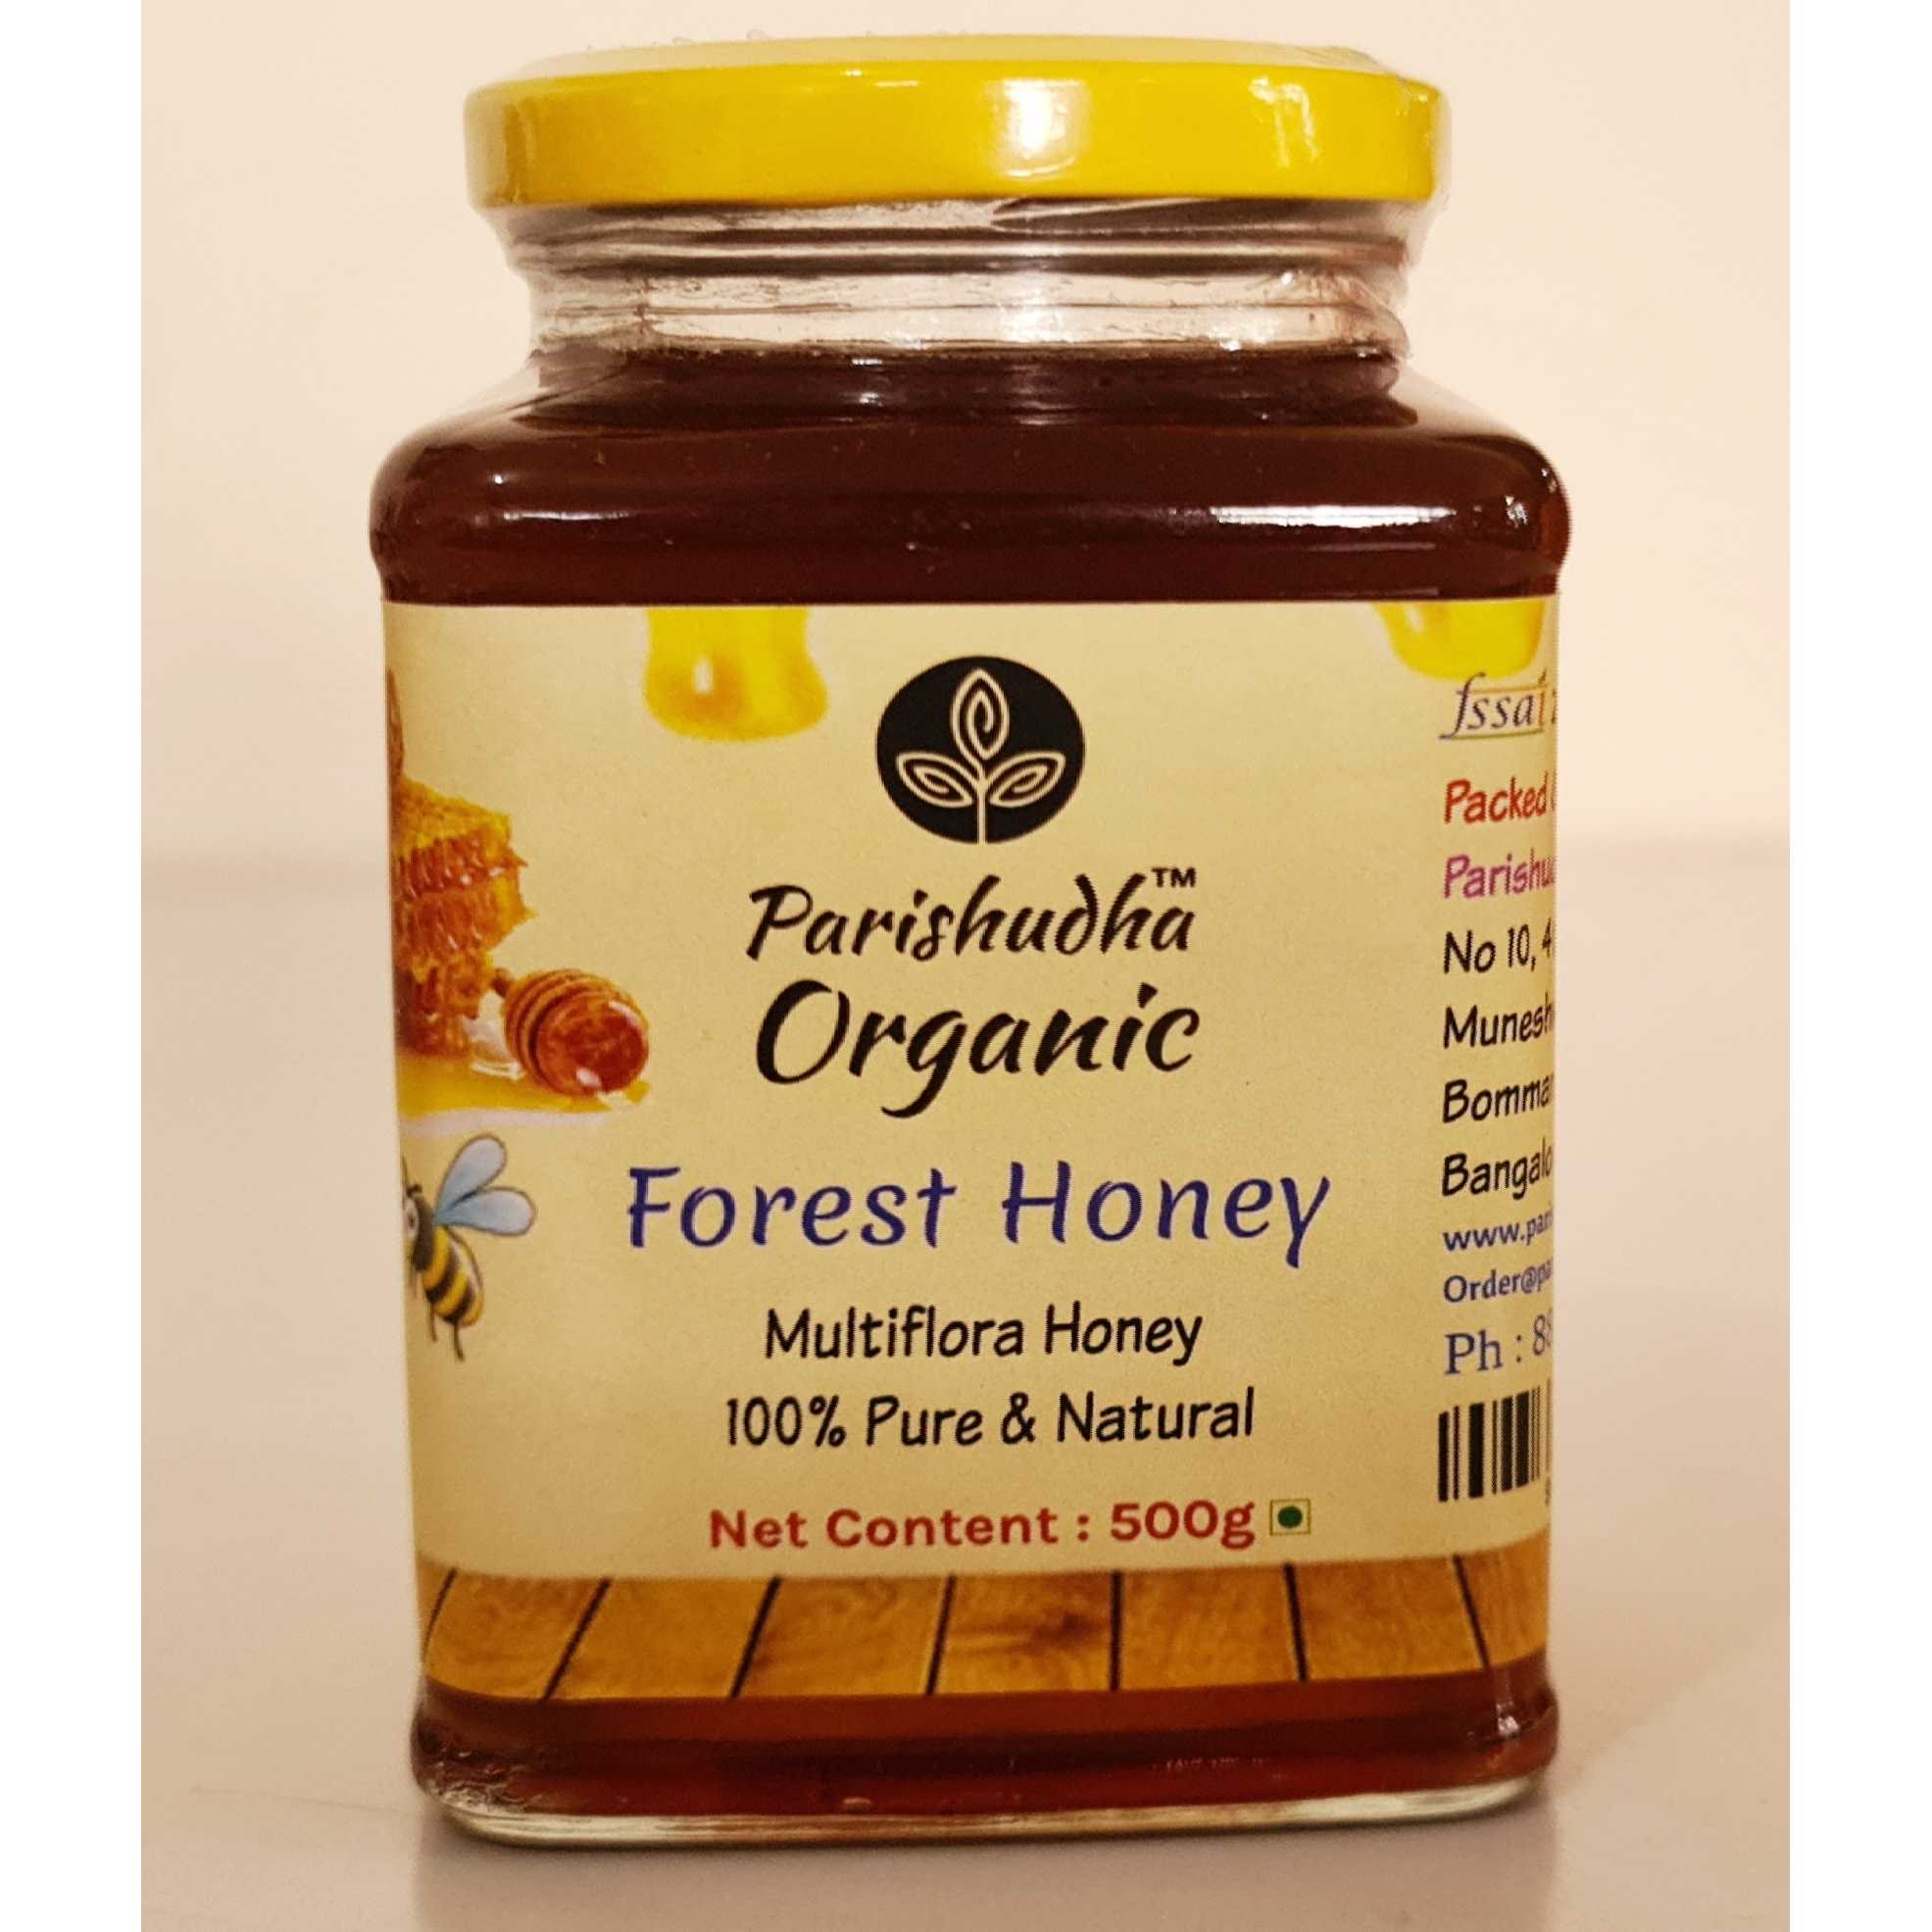 Parishudha Organic Honey Multi Flora forest honey